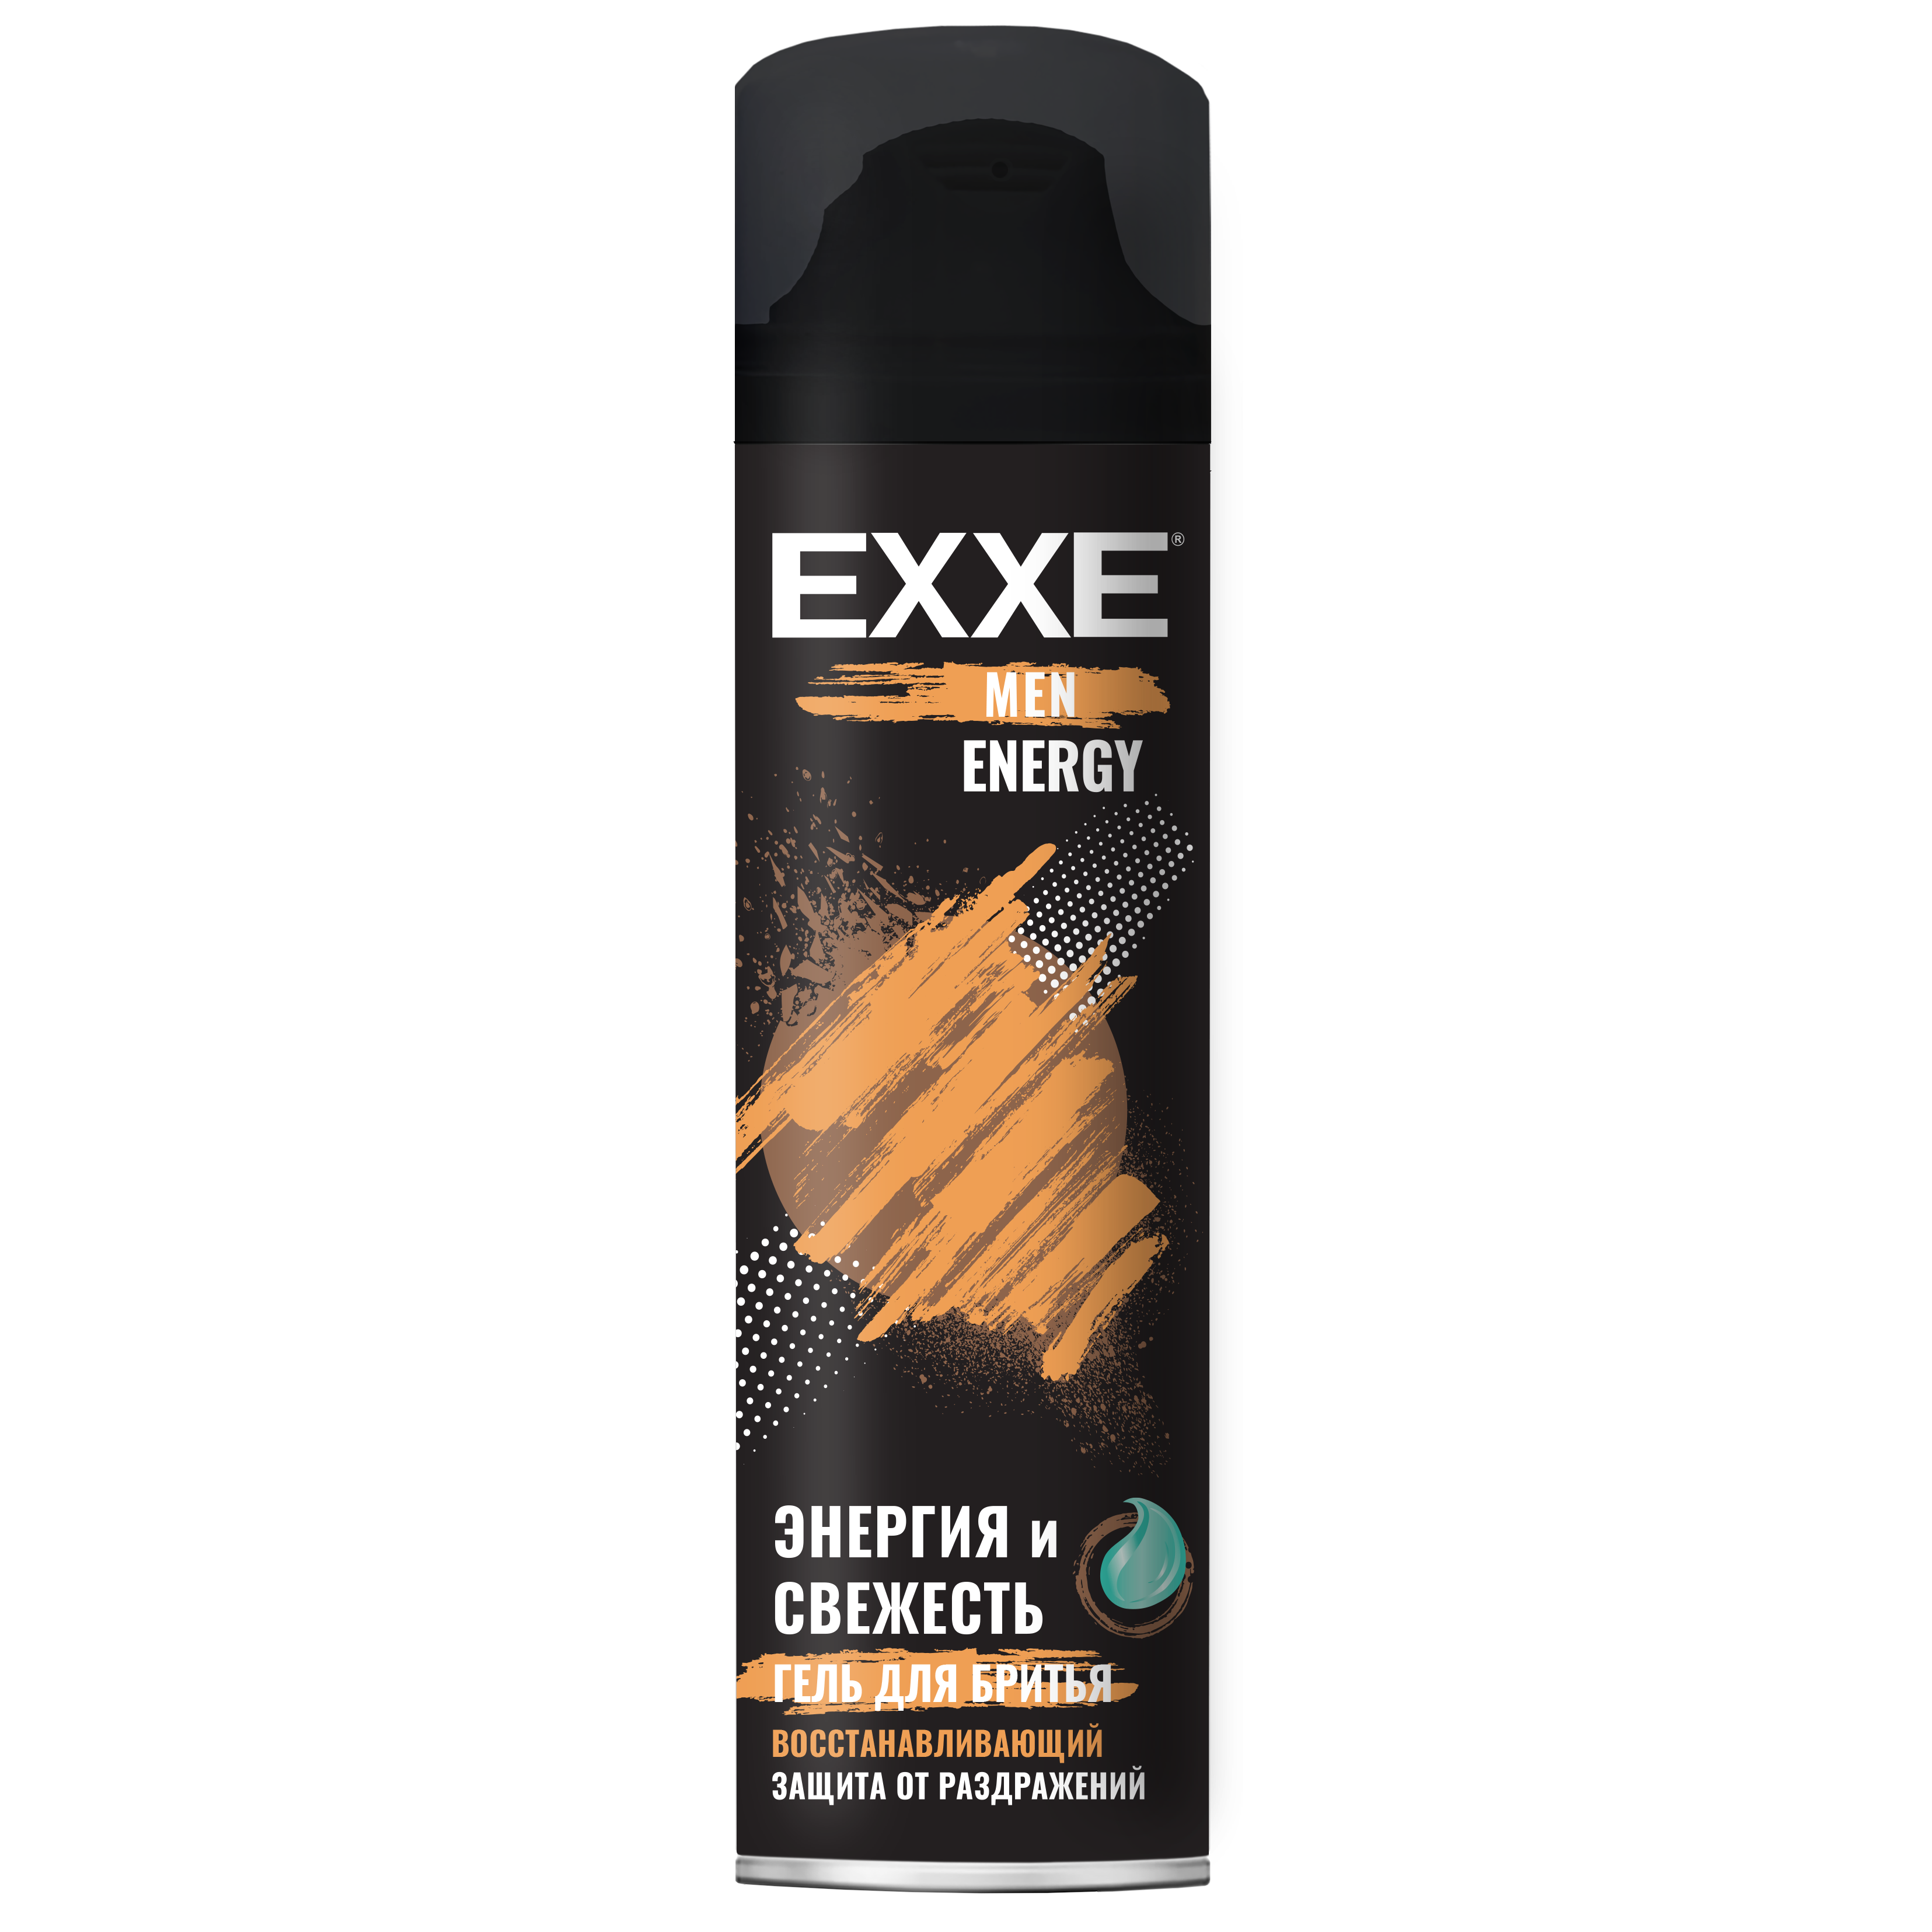 Гель для бритья EXXE MEN Восстанавливающий Energy, 200 мл гель для бритья carelax energy против раздражений 200мл